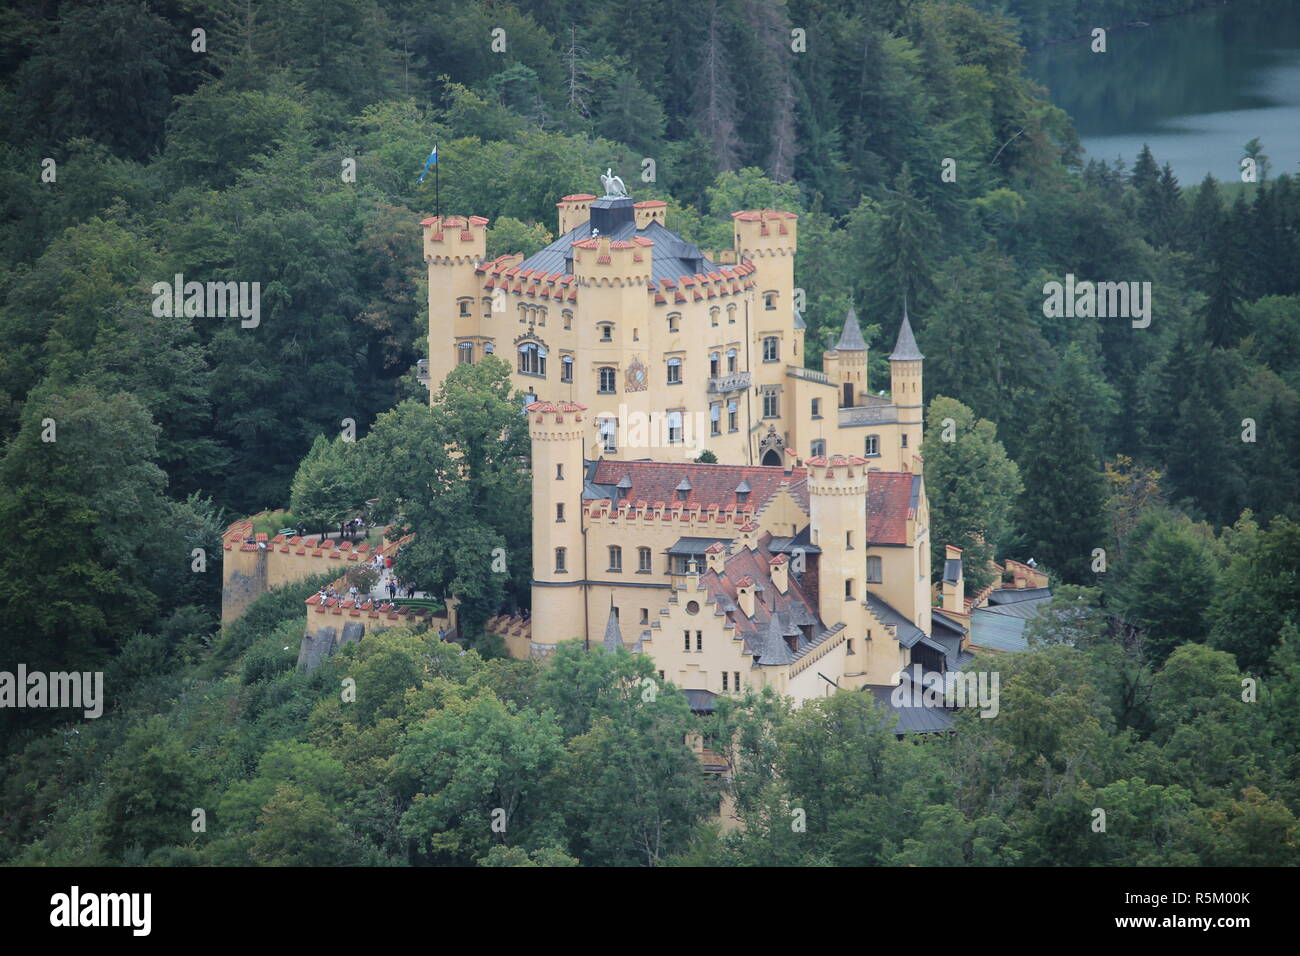 El castillo de Hohenschwangau (en alemán, Schloss Hohenschwangau) es un palacio del siglo XIX en el sur de Alemania. Fue la residencia de la infancia del rey Luis II Foto de stock